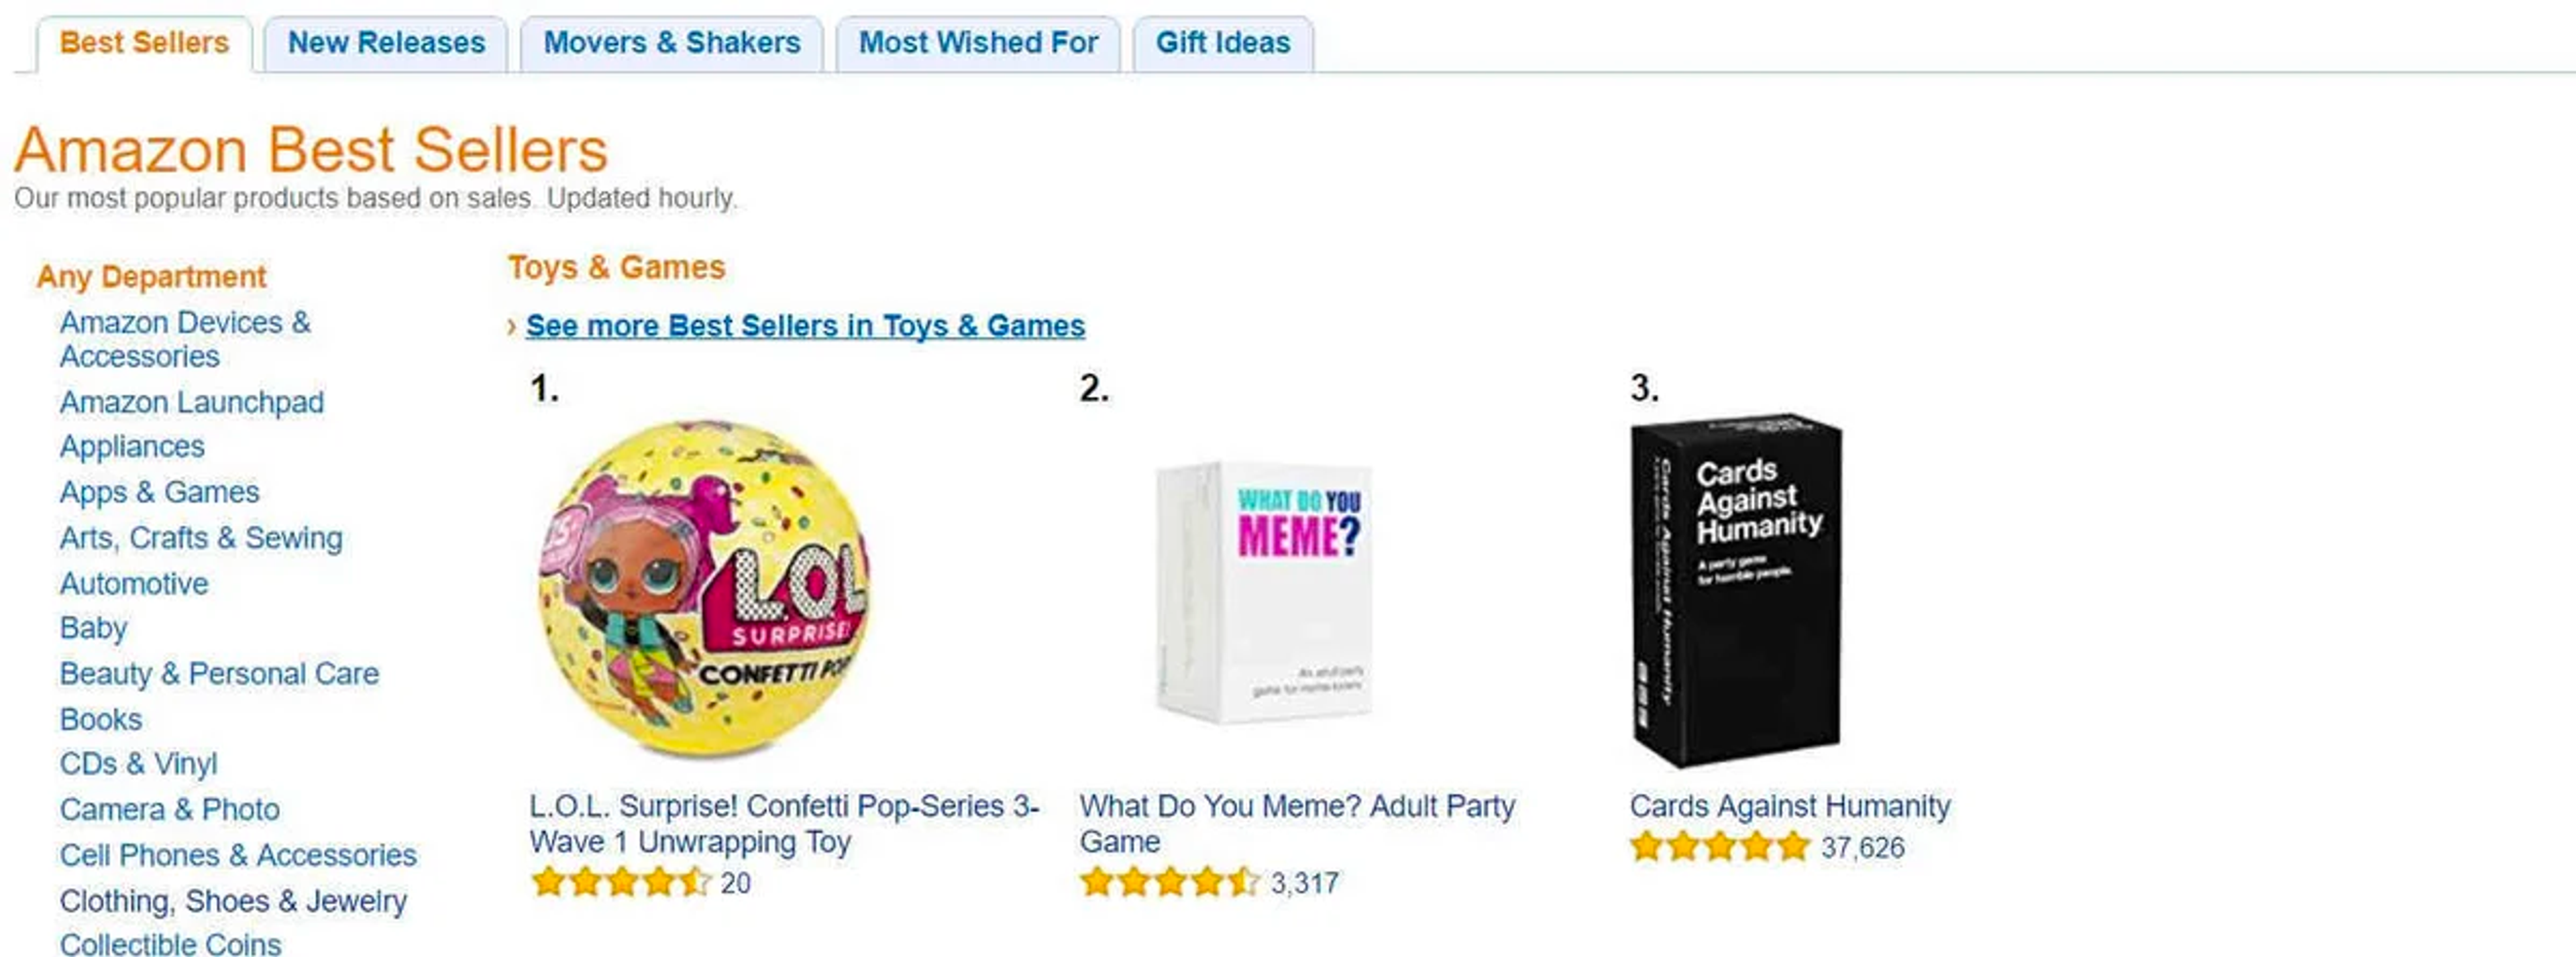 Amazon's best sellers